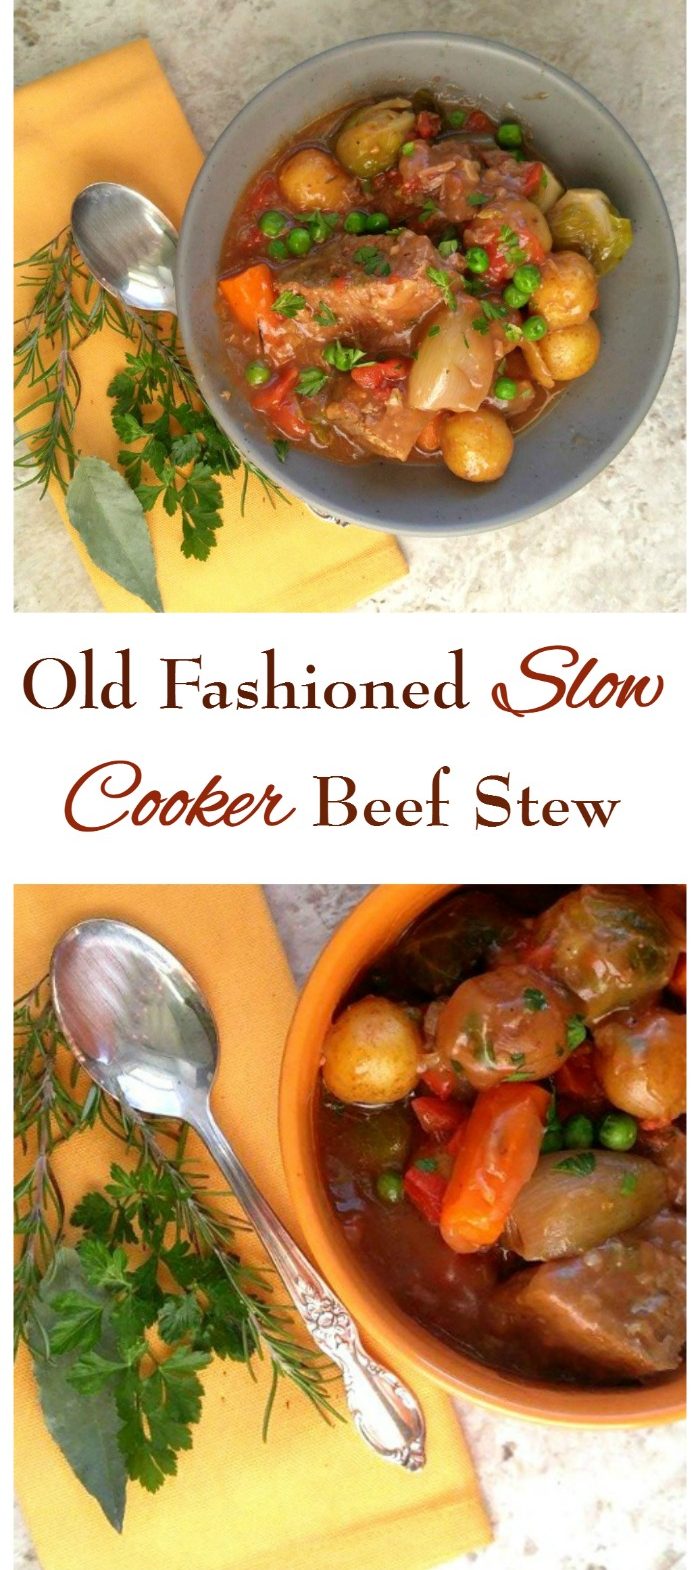 ခေတ်မီဆန်းသစ်သော Slow Cooker အမဲသားစွပ်ပြုတ် - အရသာရှိသော Crock Pot ချက်နည်း